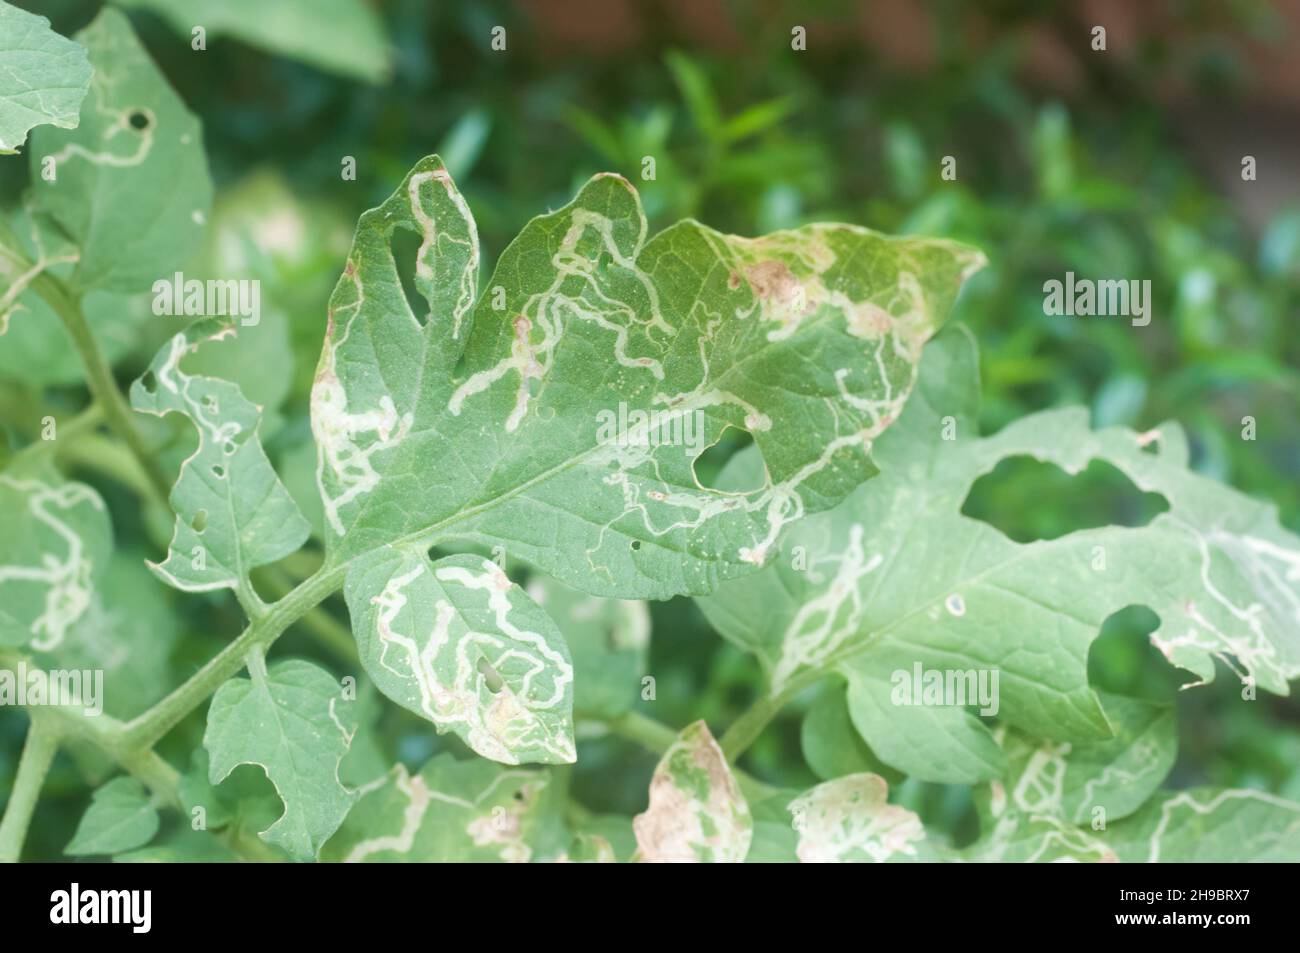 Danno larvale del fogliame vegetale (Liriomyza sativae) ad una foglia di pomodoro (Solanum lycopersicum). Le piste pallidi nella foglia sono le gallerie realizzate dalla Foto Stock